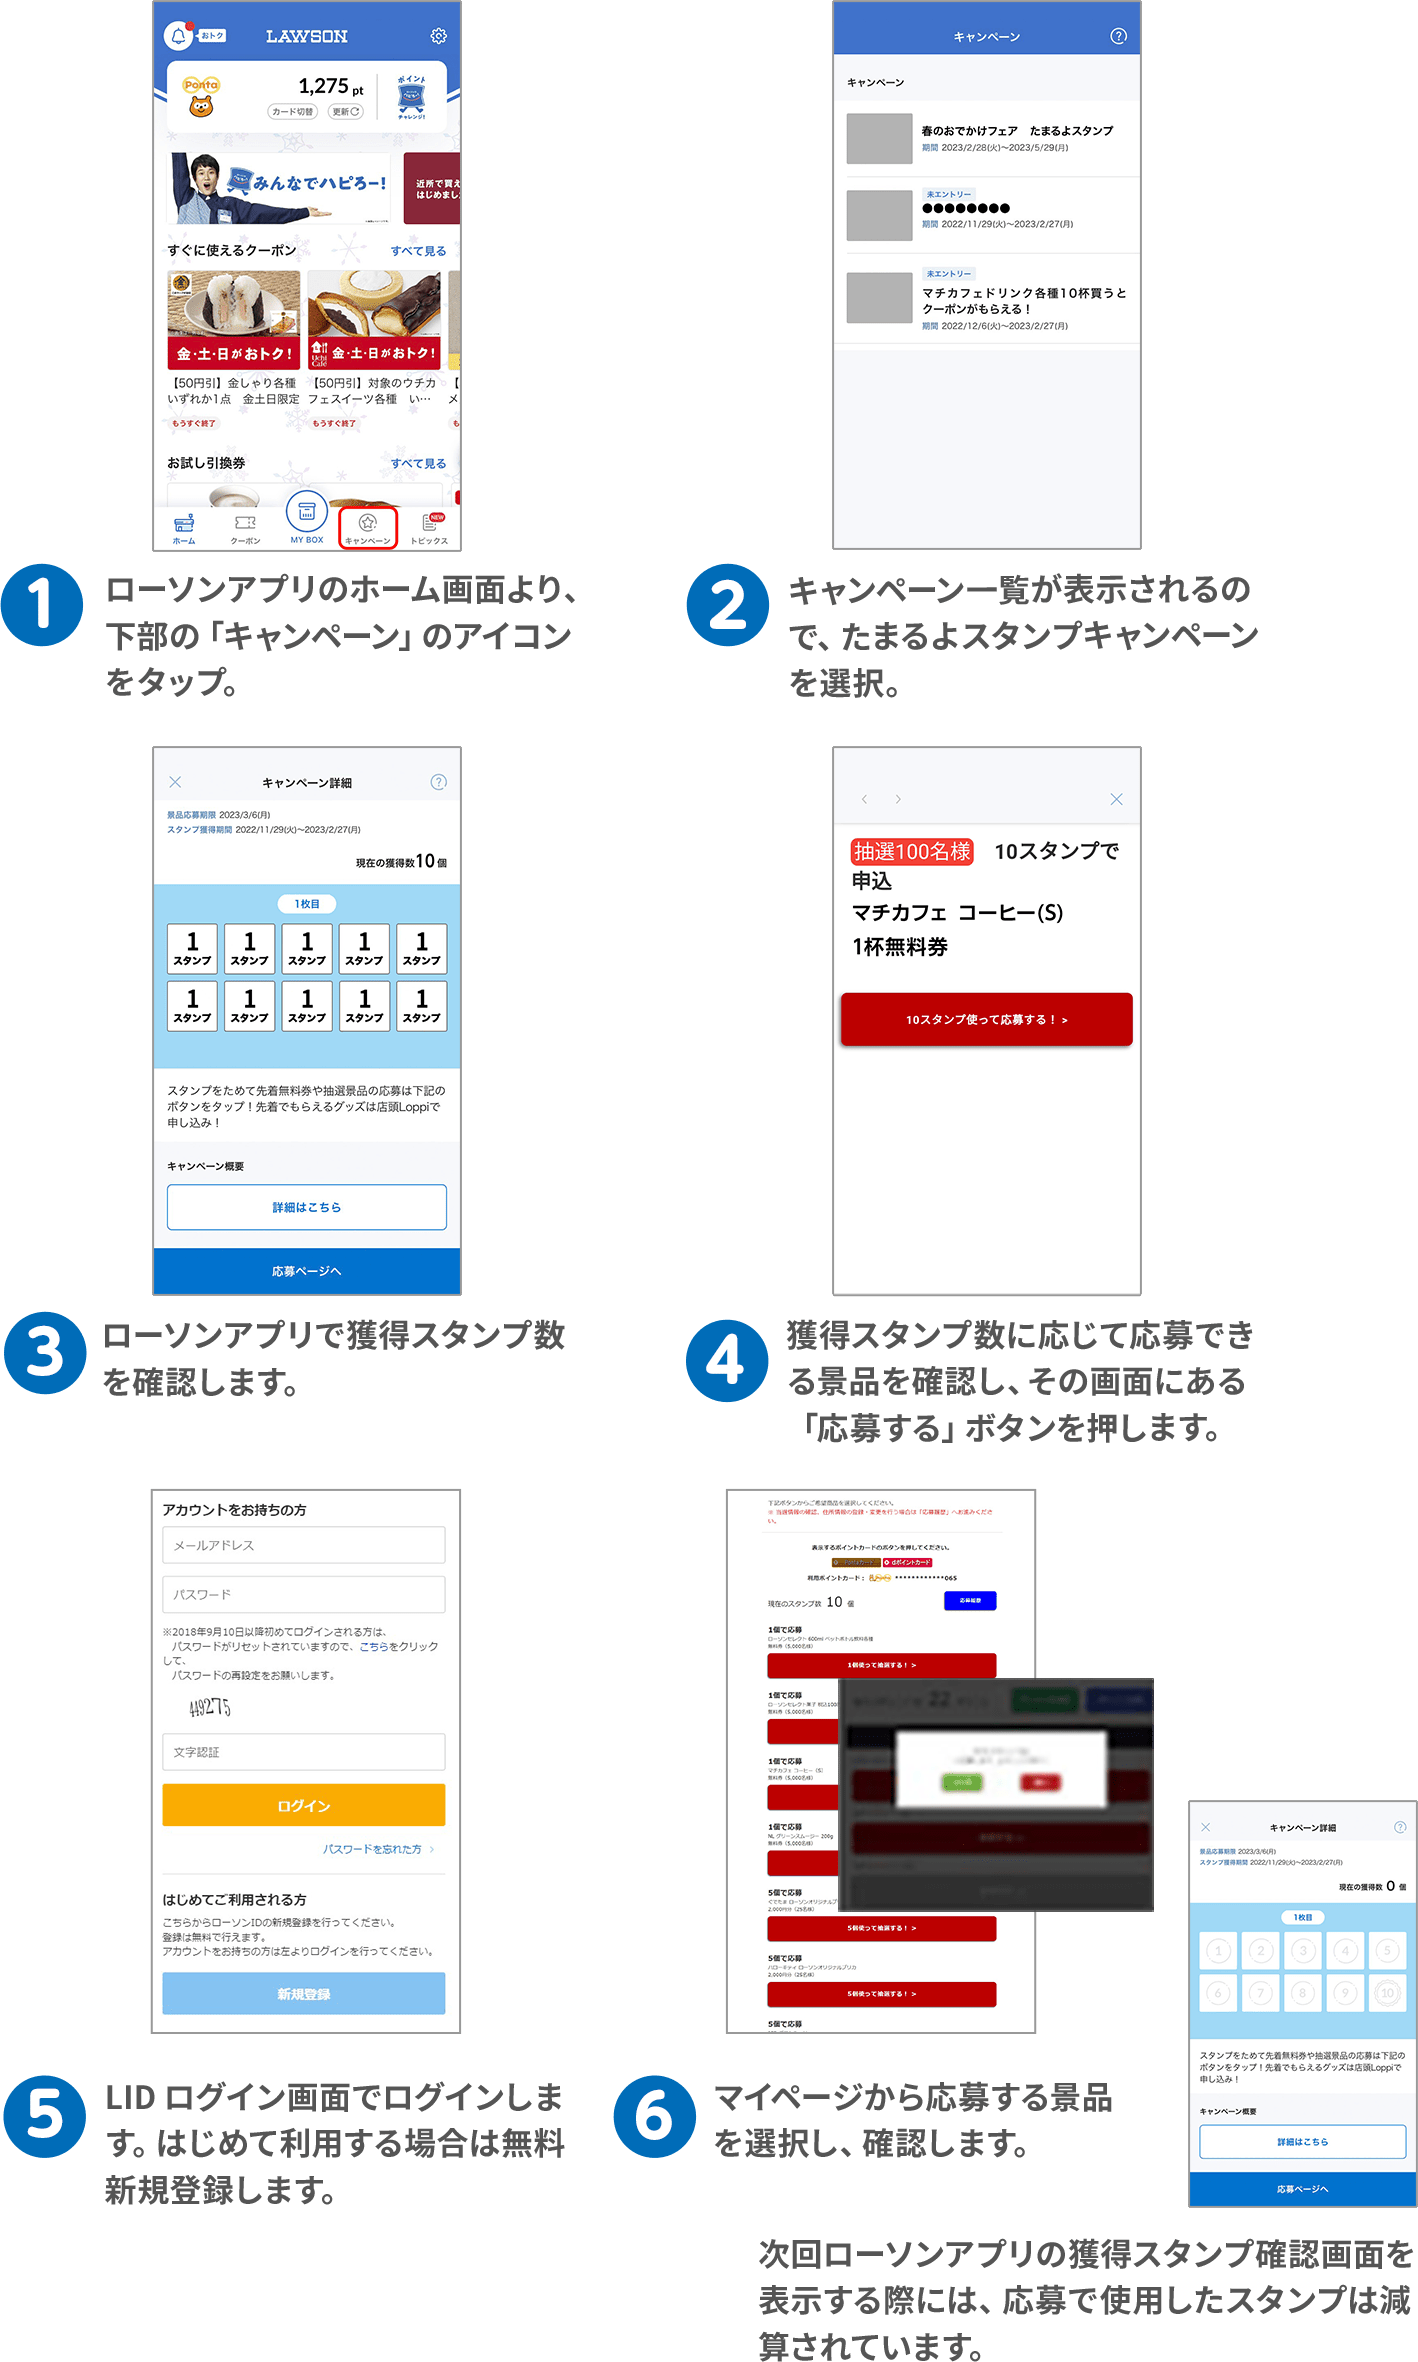 （1）ローソンアプリのホーム画面より、下部の「キャンペーン」のアイコンをタップ。（2）キャンペーン一覧が表示されるので、たまるよスタンプキャンペーンを選択。（3）ローソンアプリで獲得スタンプ数を確認します。（4）獲得スタンプ数に応じて応募できる景品を確認し、その画面にある「応募する」ボタンを押します。
（5）LID ログイン画面でログインします。はじめて利用する場合は無料新規登録します。（6）マイページから応募する景品を選択し、確認します。次回ローソンアプリの獲得スタンプ確認画面を表示する際には、応募で使用したスタンプは減算されています。